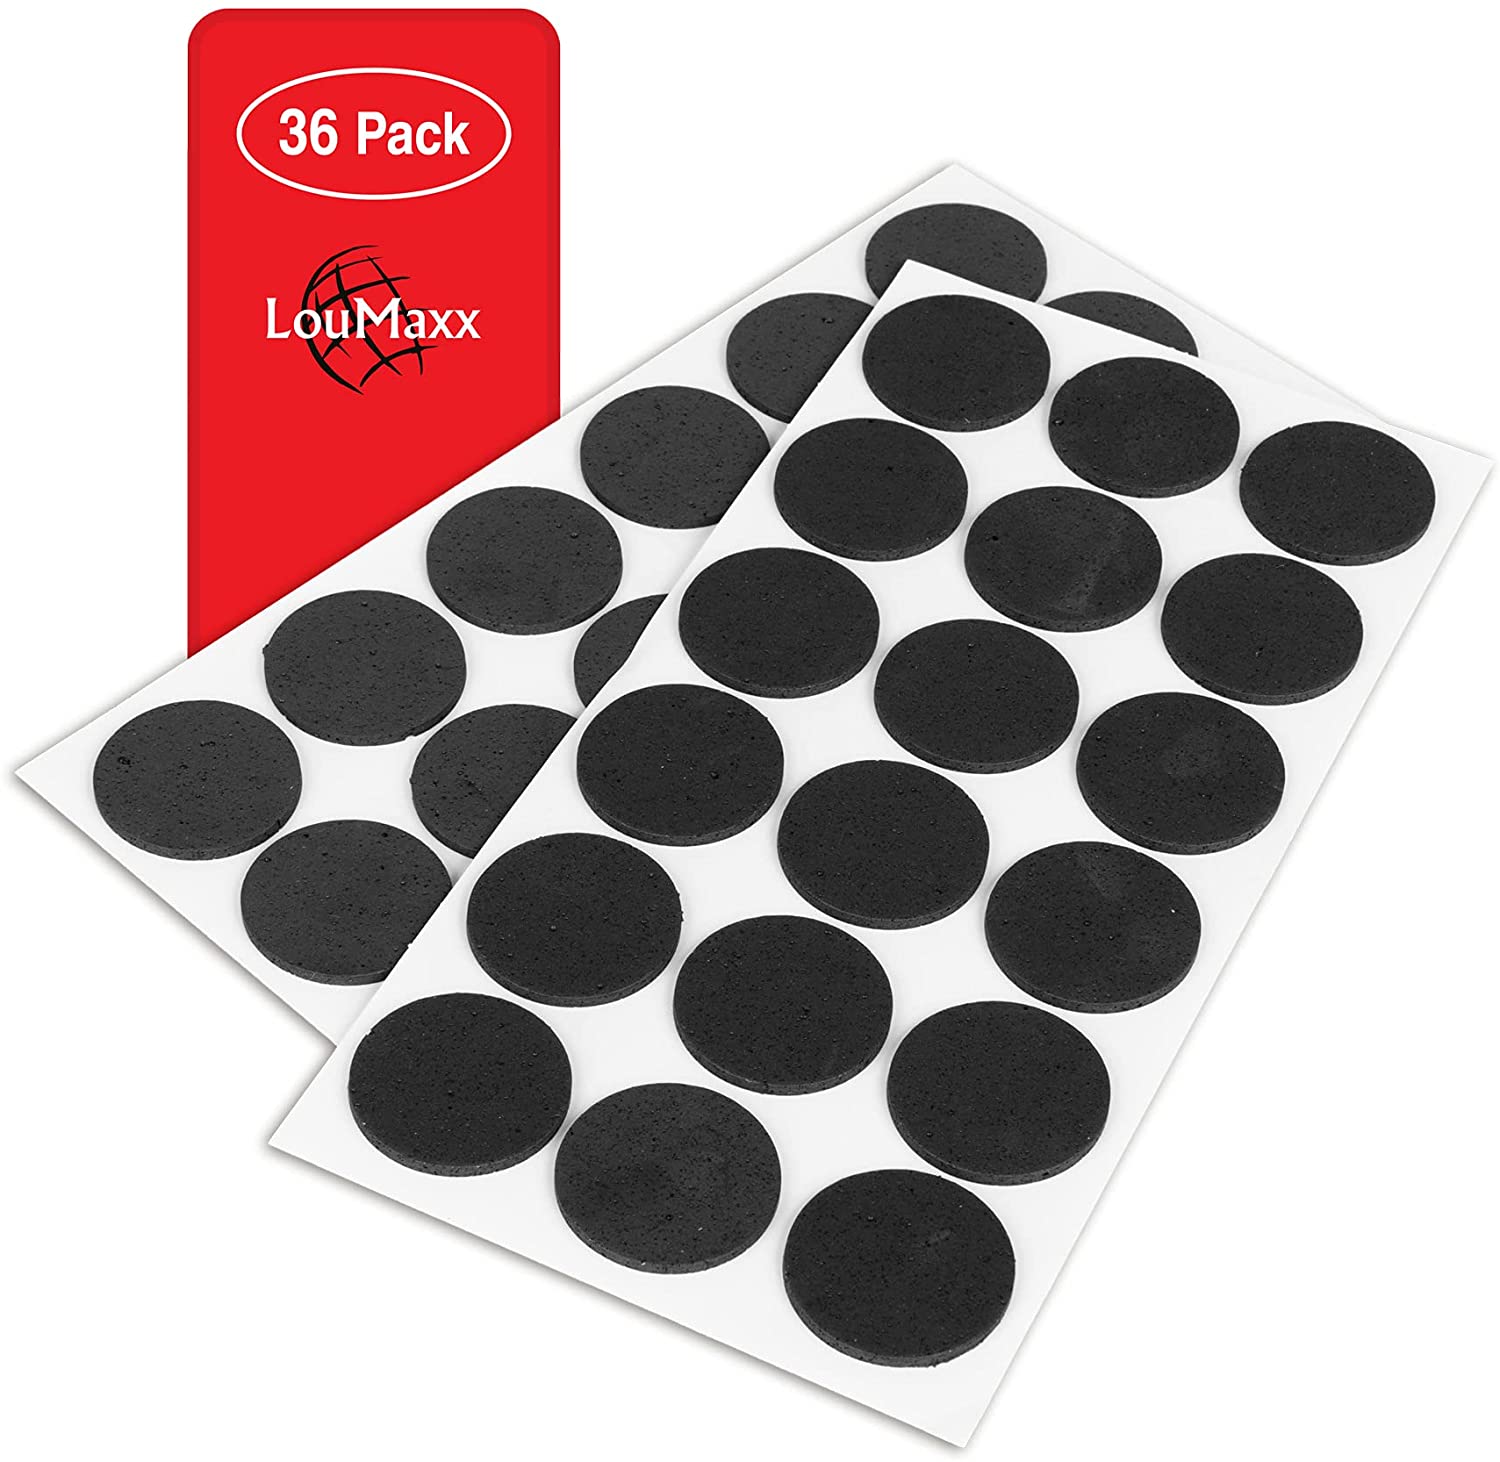 LouMaxx Antirutsch Pads selbstklebend | 36 x Anti Rutsch Möbelstopper schwarz, rund Ø 35 mm | rutschhemmend mit extra starkem Halt